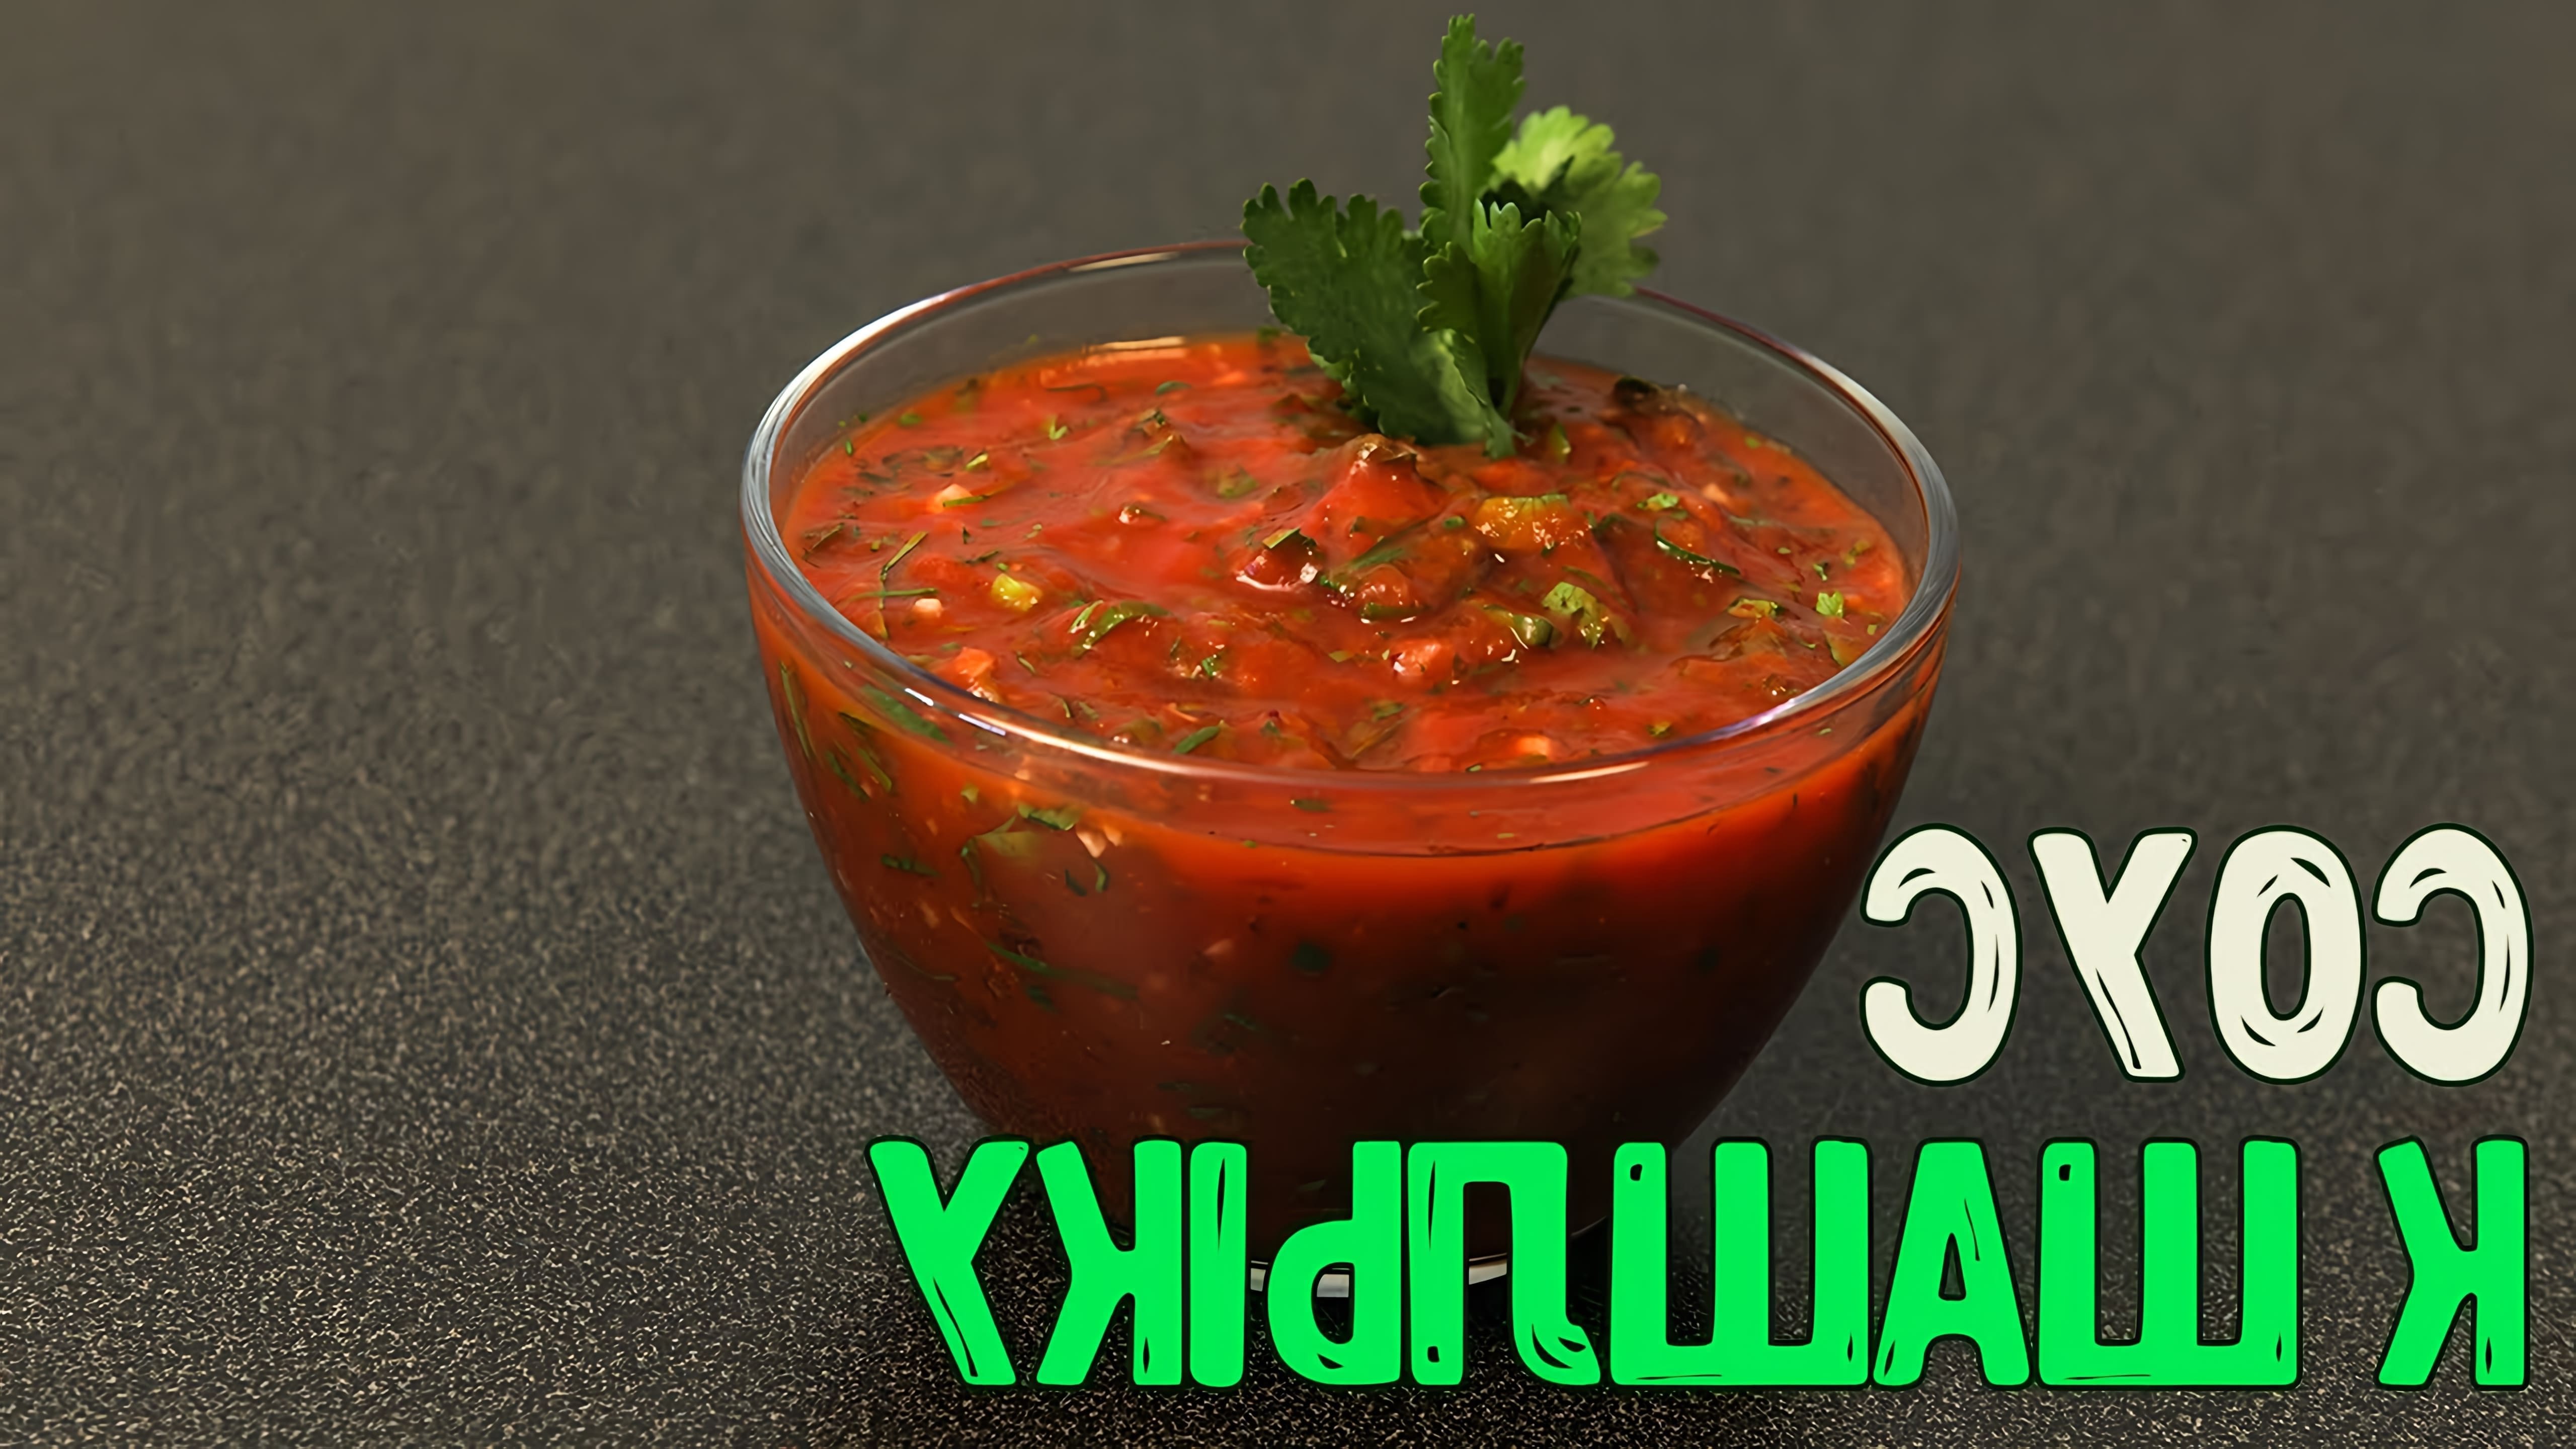 В этом видео демонстрируется процесс приготовления томатного соуса для шашлыка